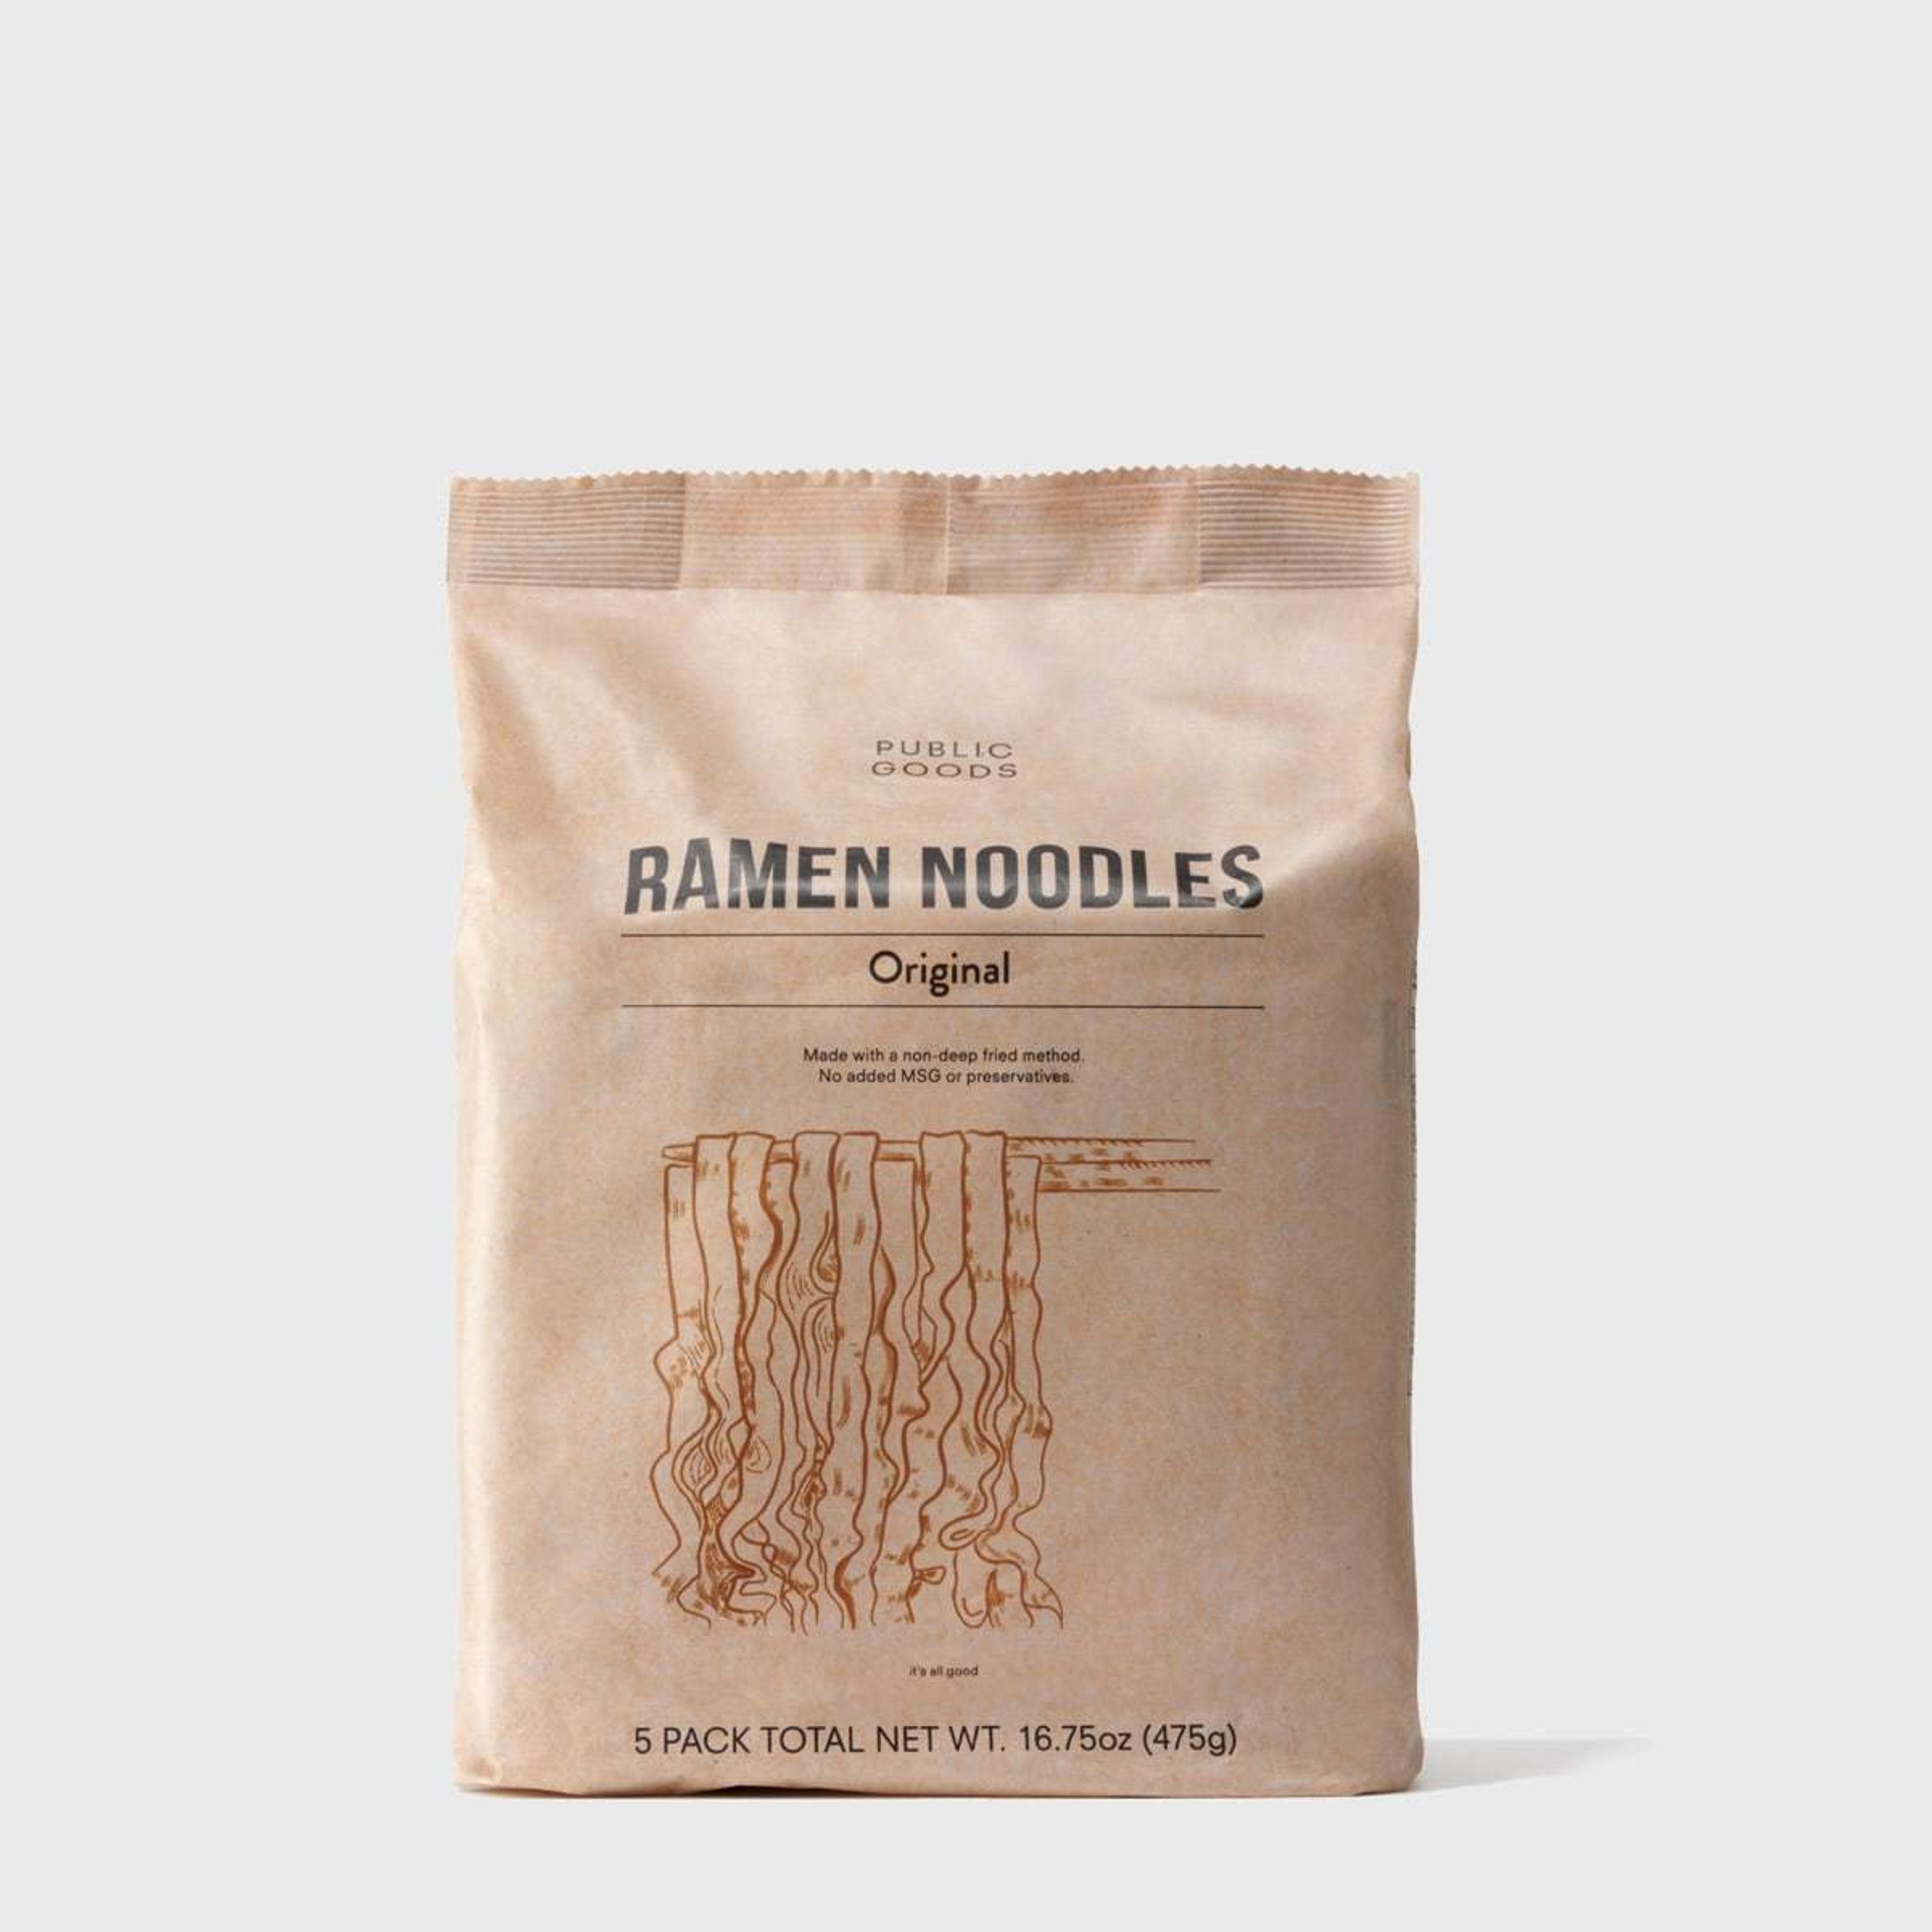 Original Ramen Noodles